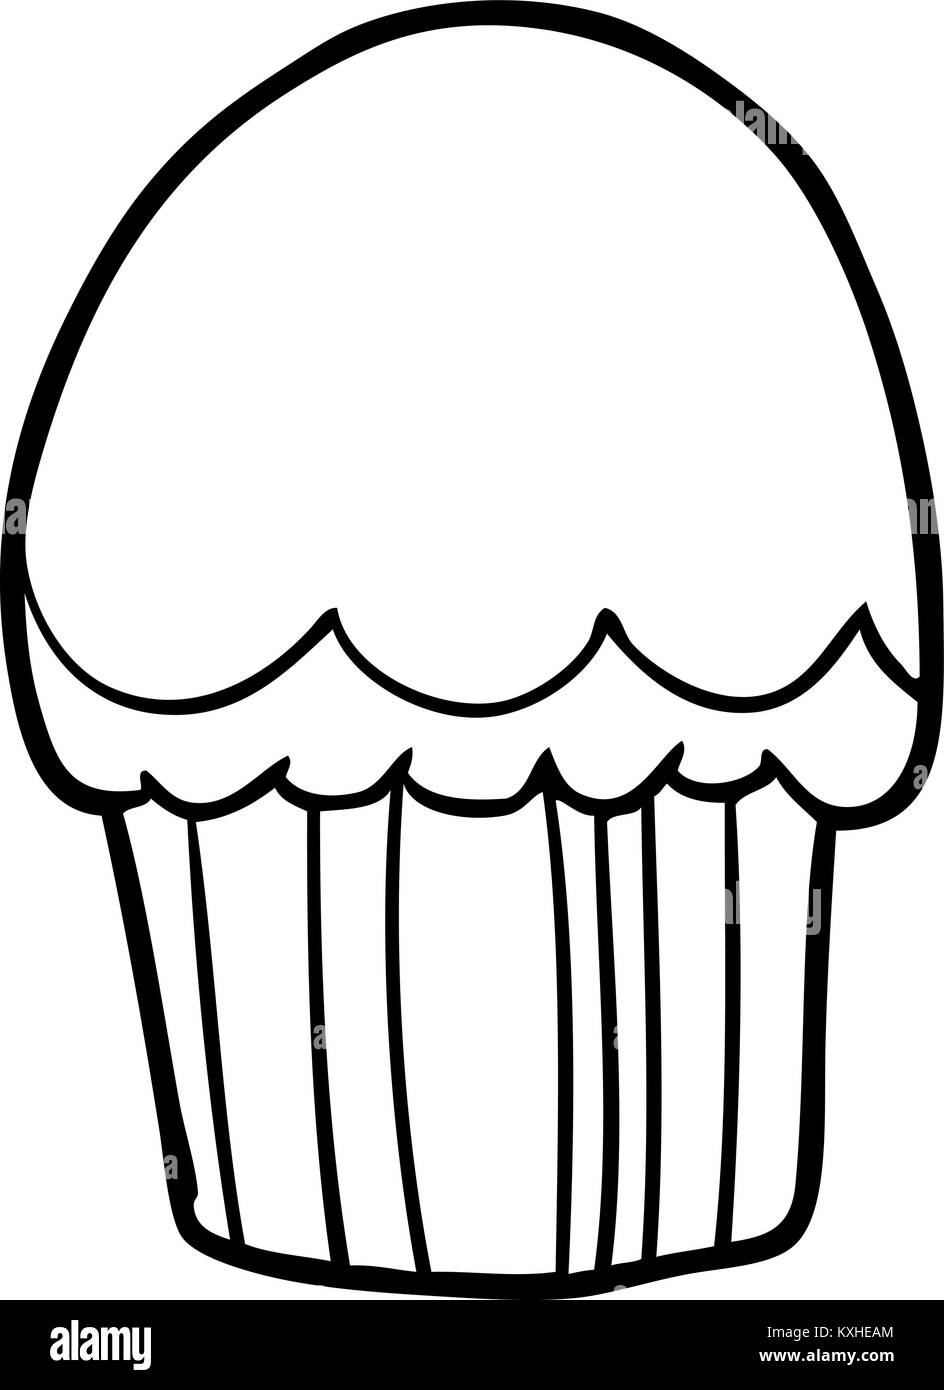 Zeichnung eines Cupcake Stock Vektor